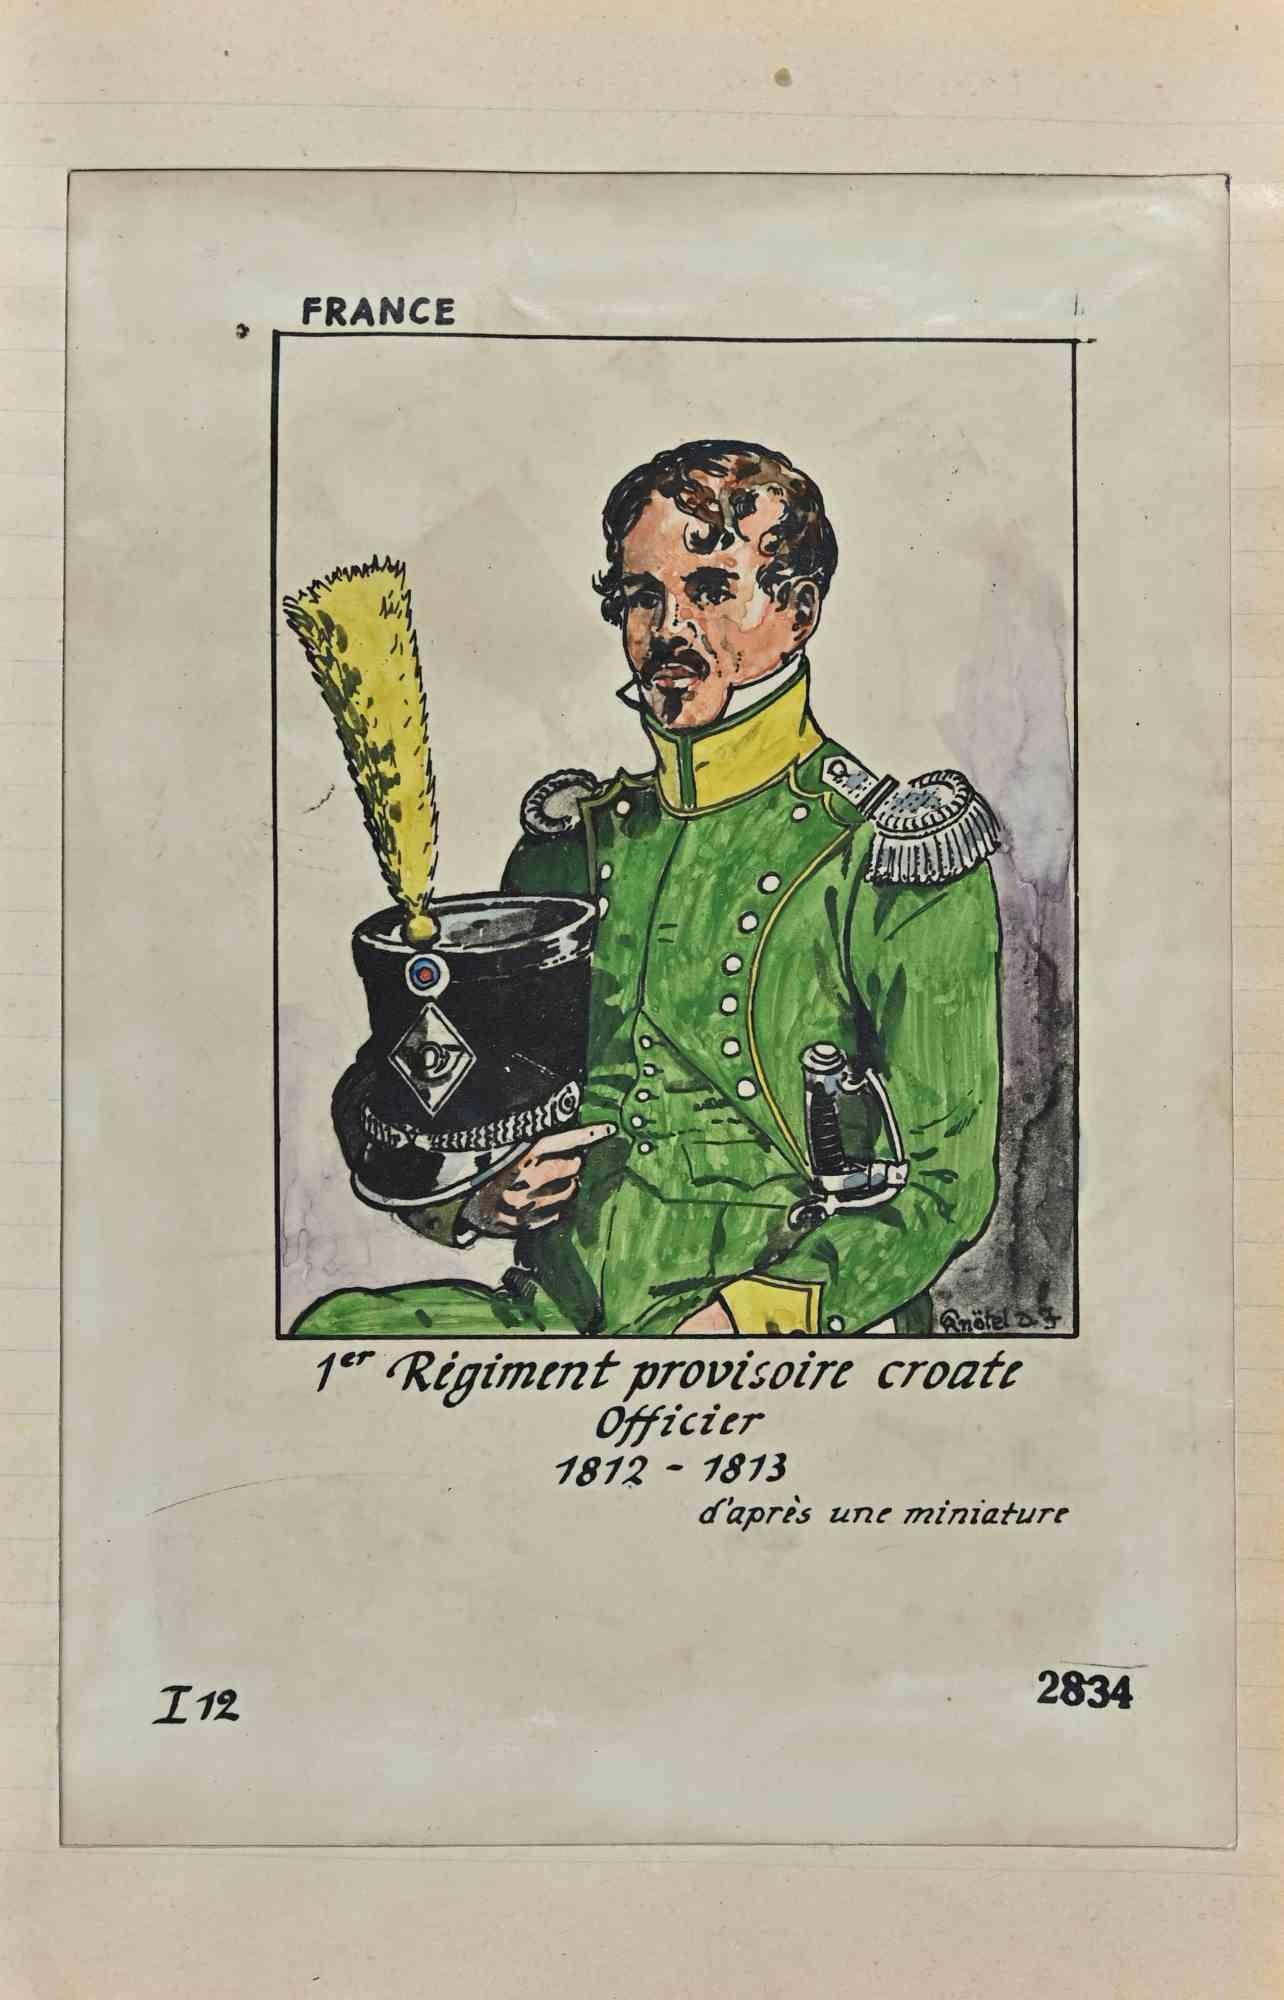 Regiment Provisoire Croate Officier ist eine Originalzeichnung in Tusche und Aquarell von Herbert Knotel aus den 1930/40er Jahren.

Guter Zustand, außer dass er gealtert ist.

Das Kunstwerk wird durch starke Linien in ausgewogenen Verhältnissen